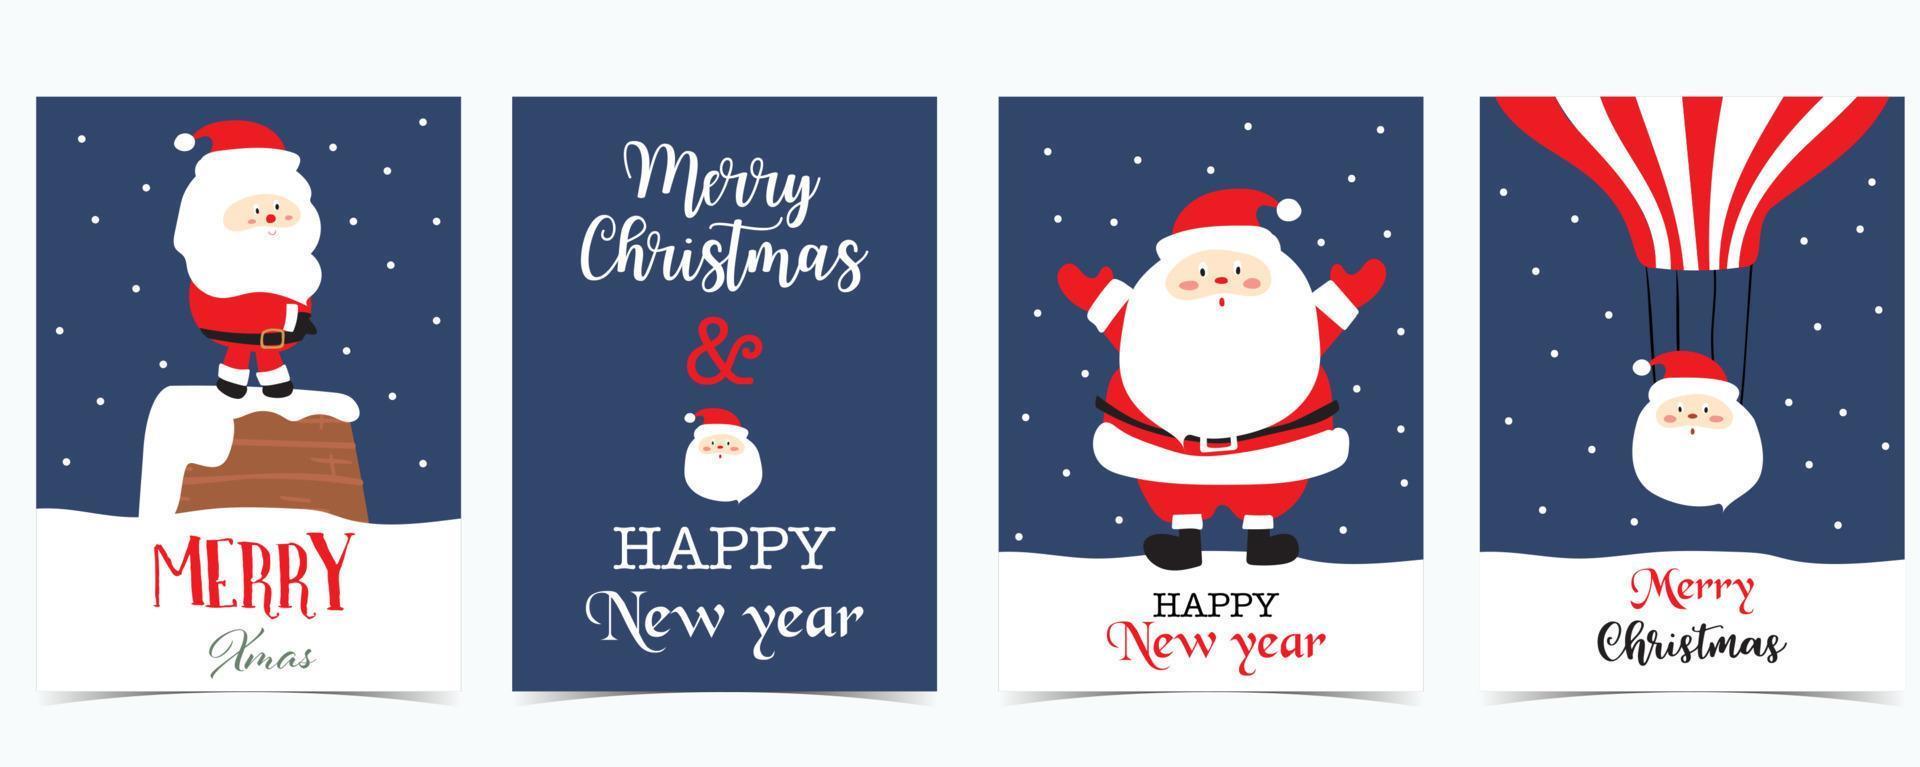 carino Natale collezione con Santa claus.vector illustrazione per poster, cartolina, banner, copertina vettore